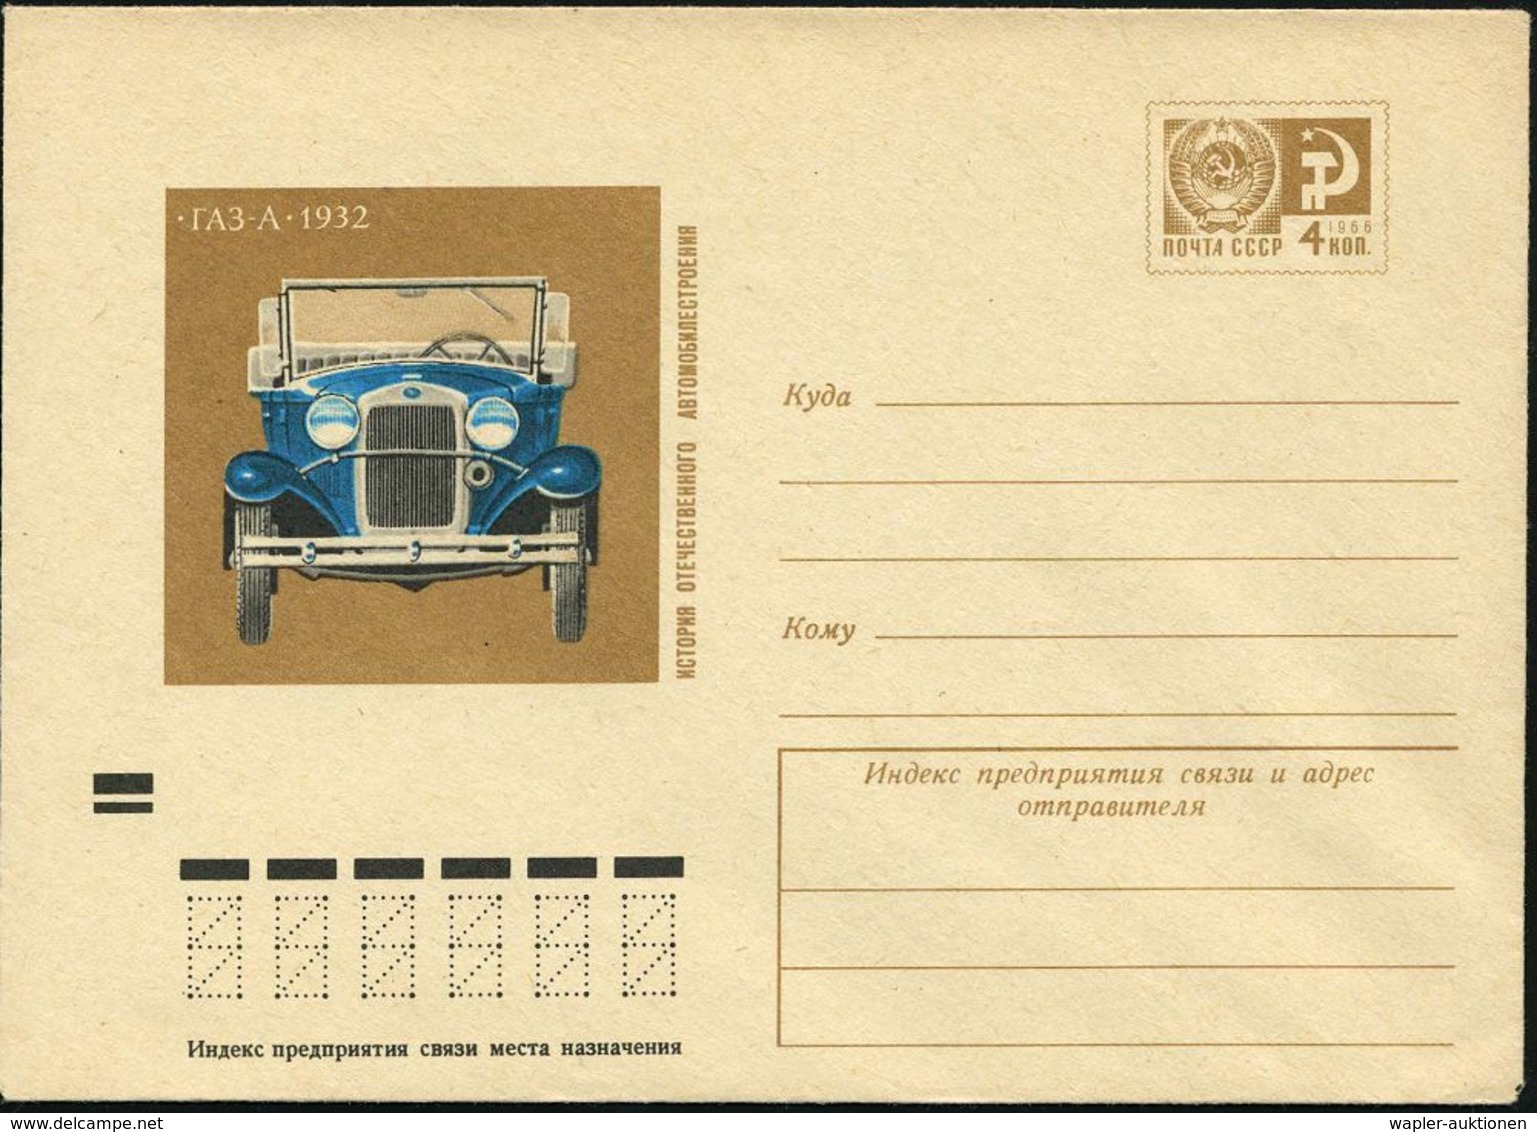 AUTOMOBIL-HERSTELLER AUSLAND : UdSSR 1973 4 Kop. U Staatswappen , Braun: GAS "A" Von 1932 (Kabrio) Ungebr. - Automobili